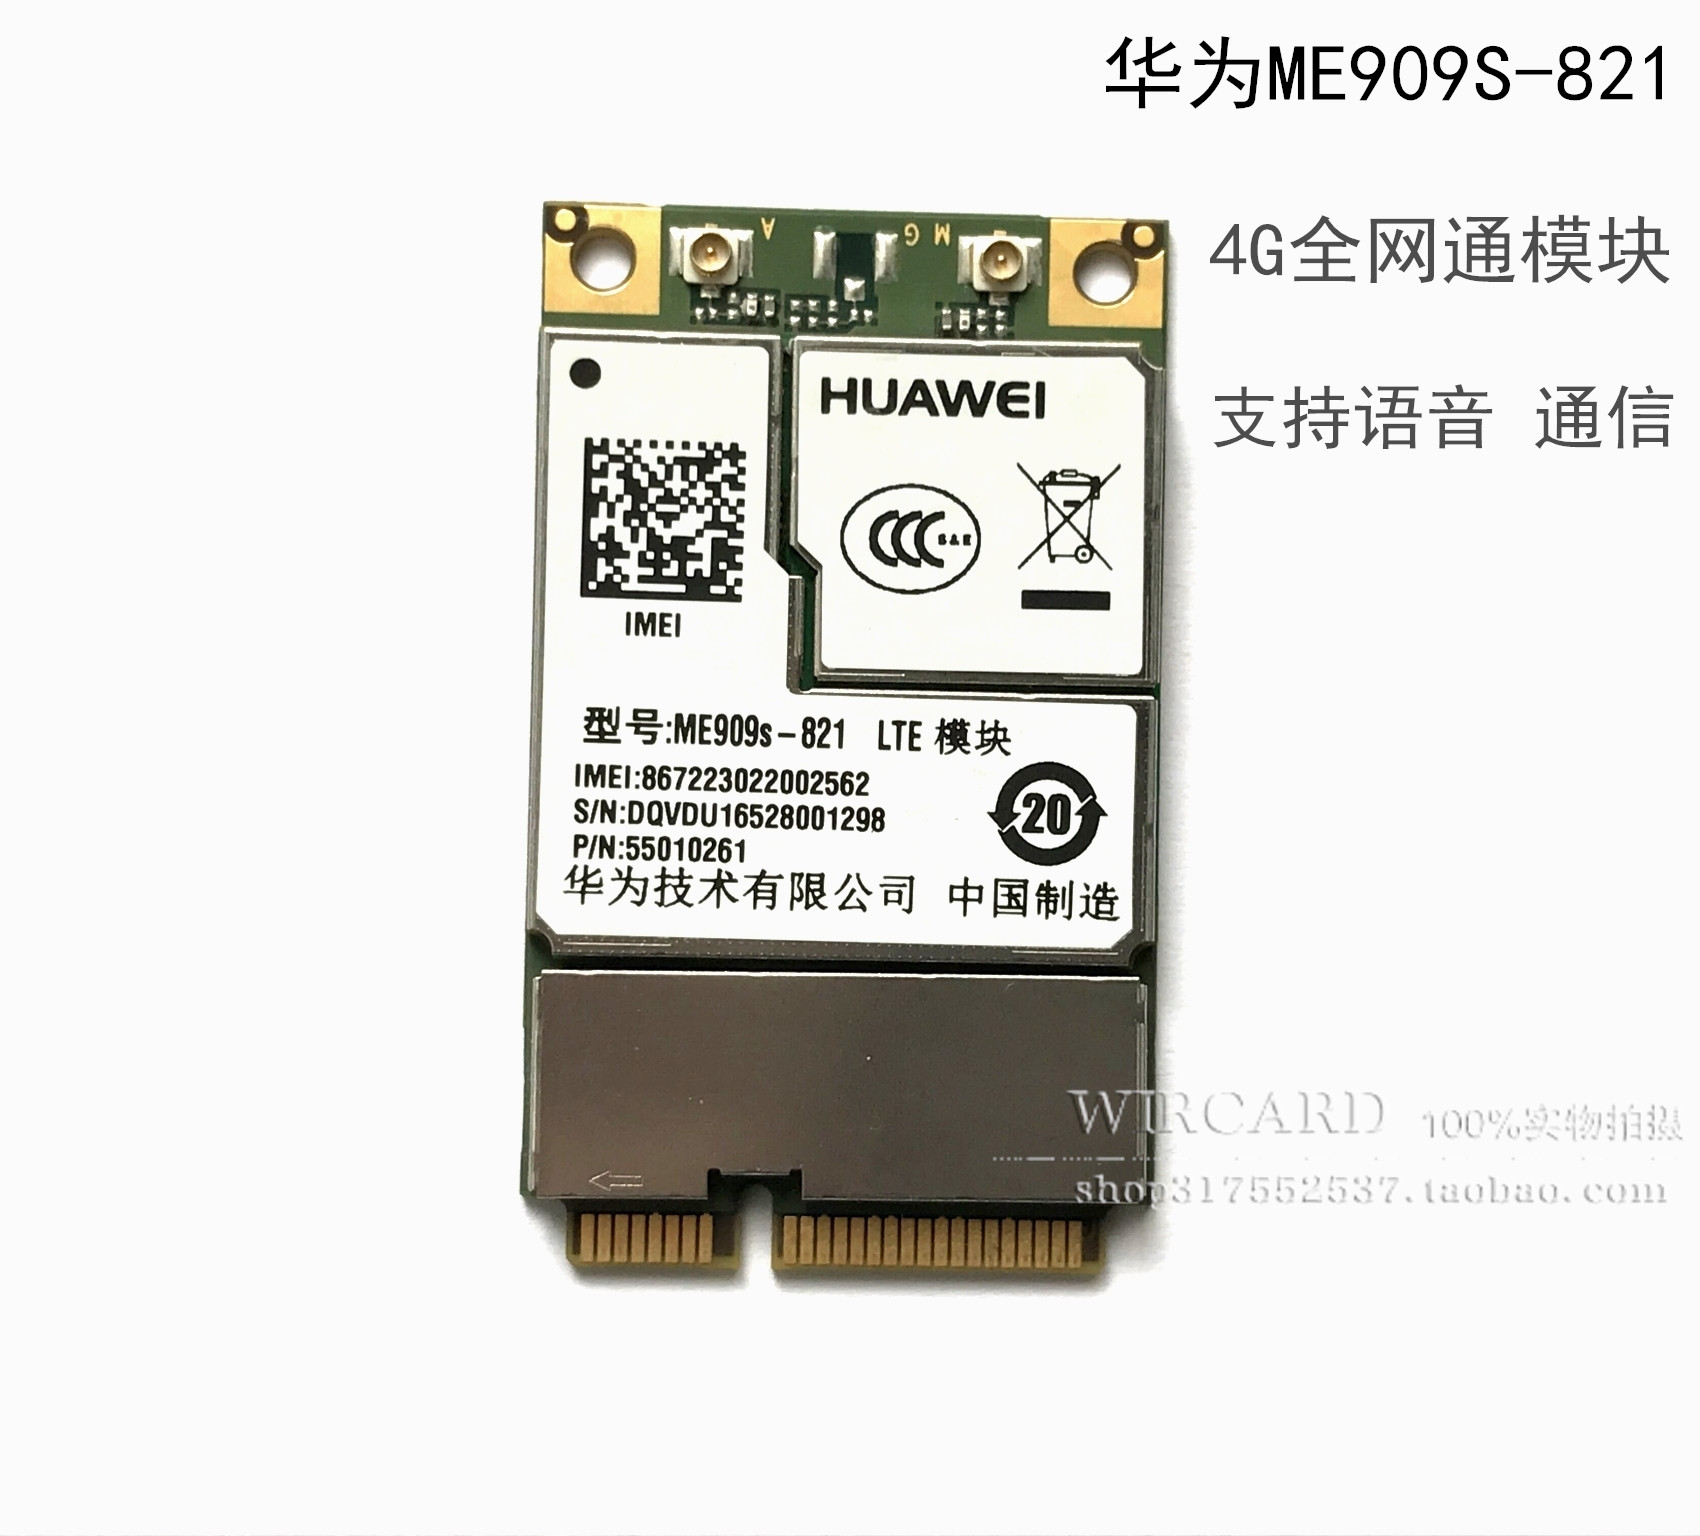 HUAWEI ME909S-821 MINI PCIE 4G FULL NETCOM    4G   ī